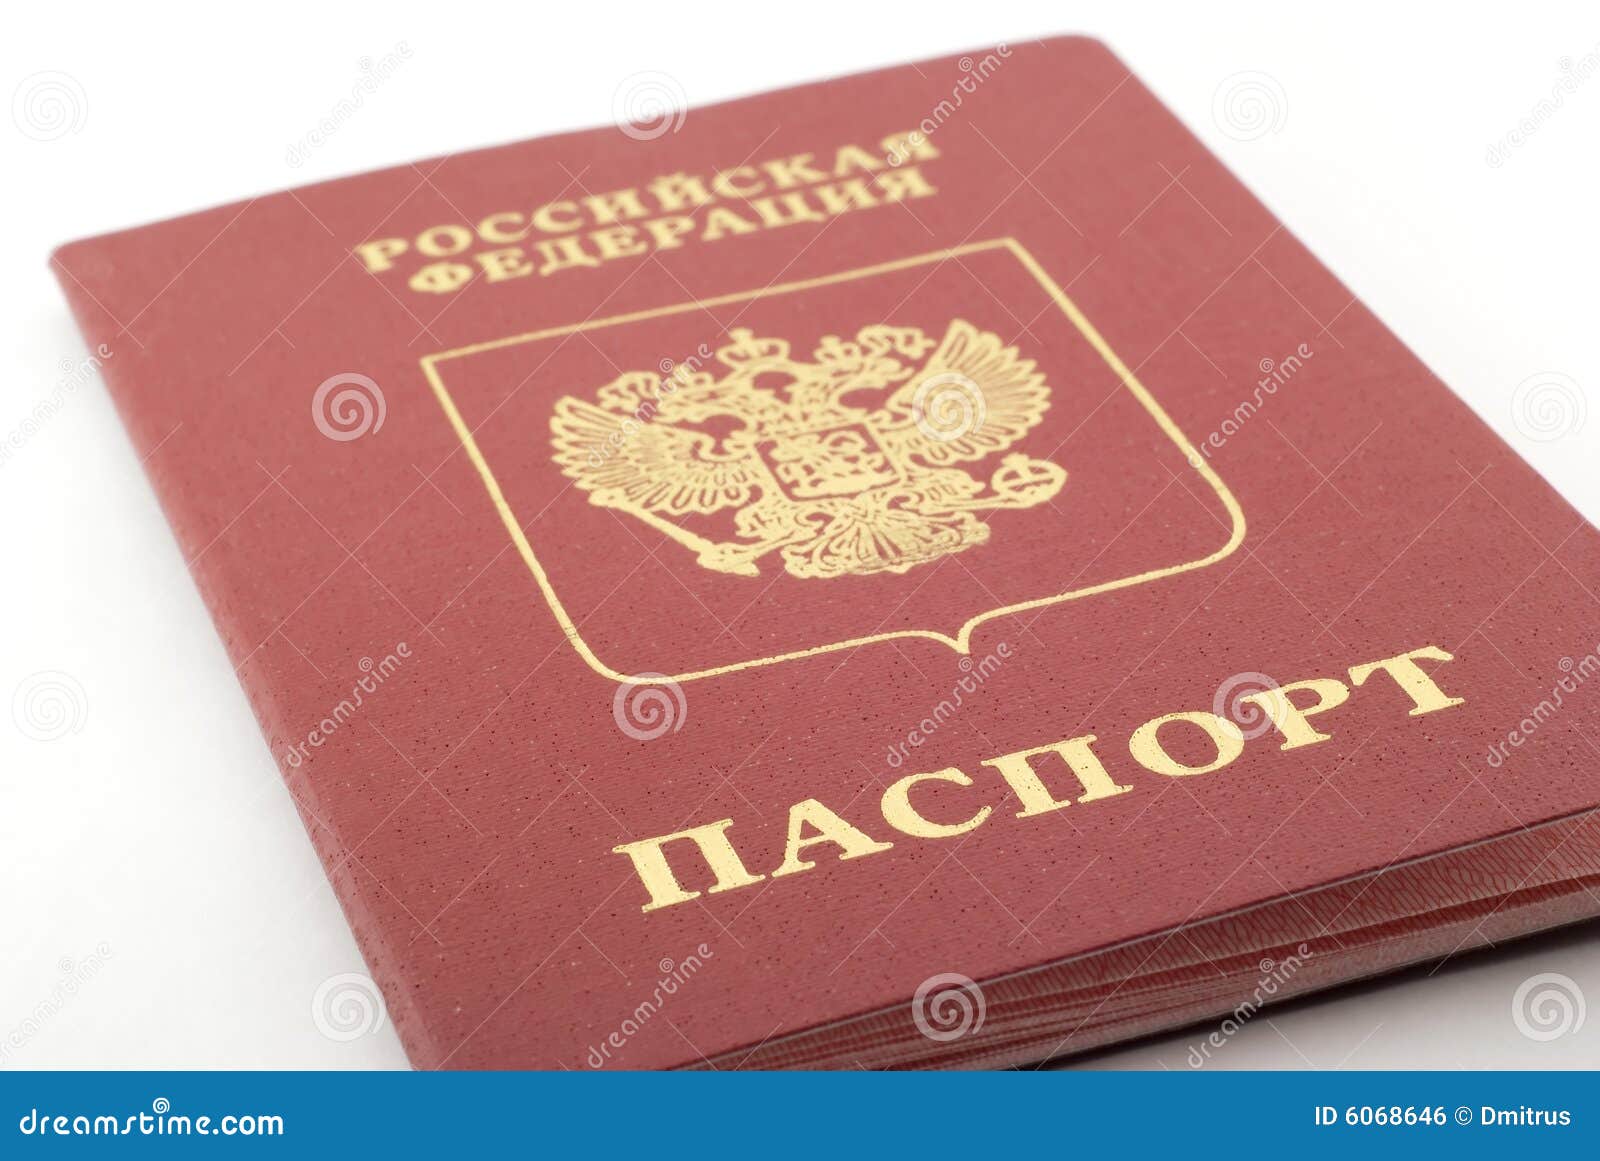 Паспорт картинка для детей